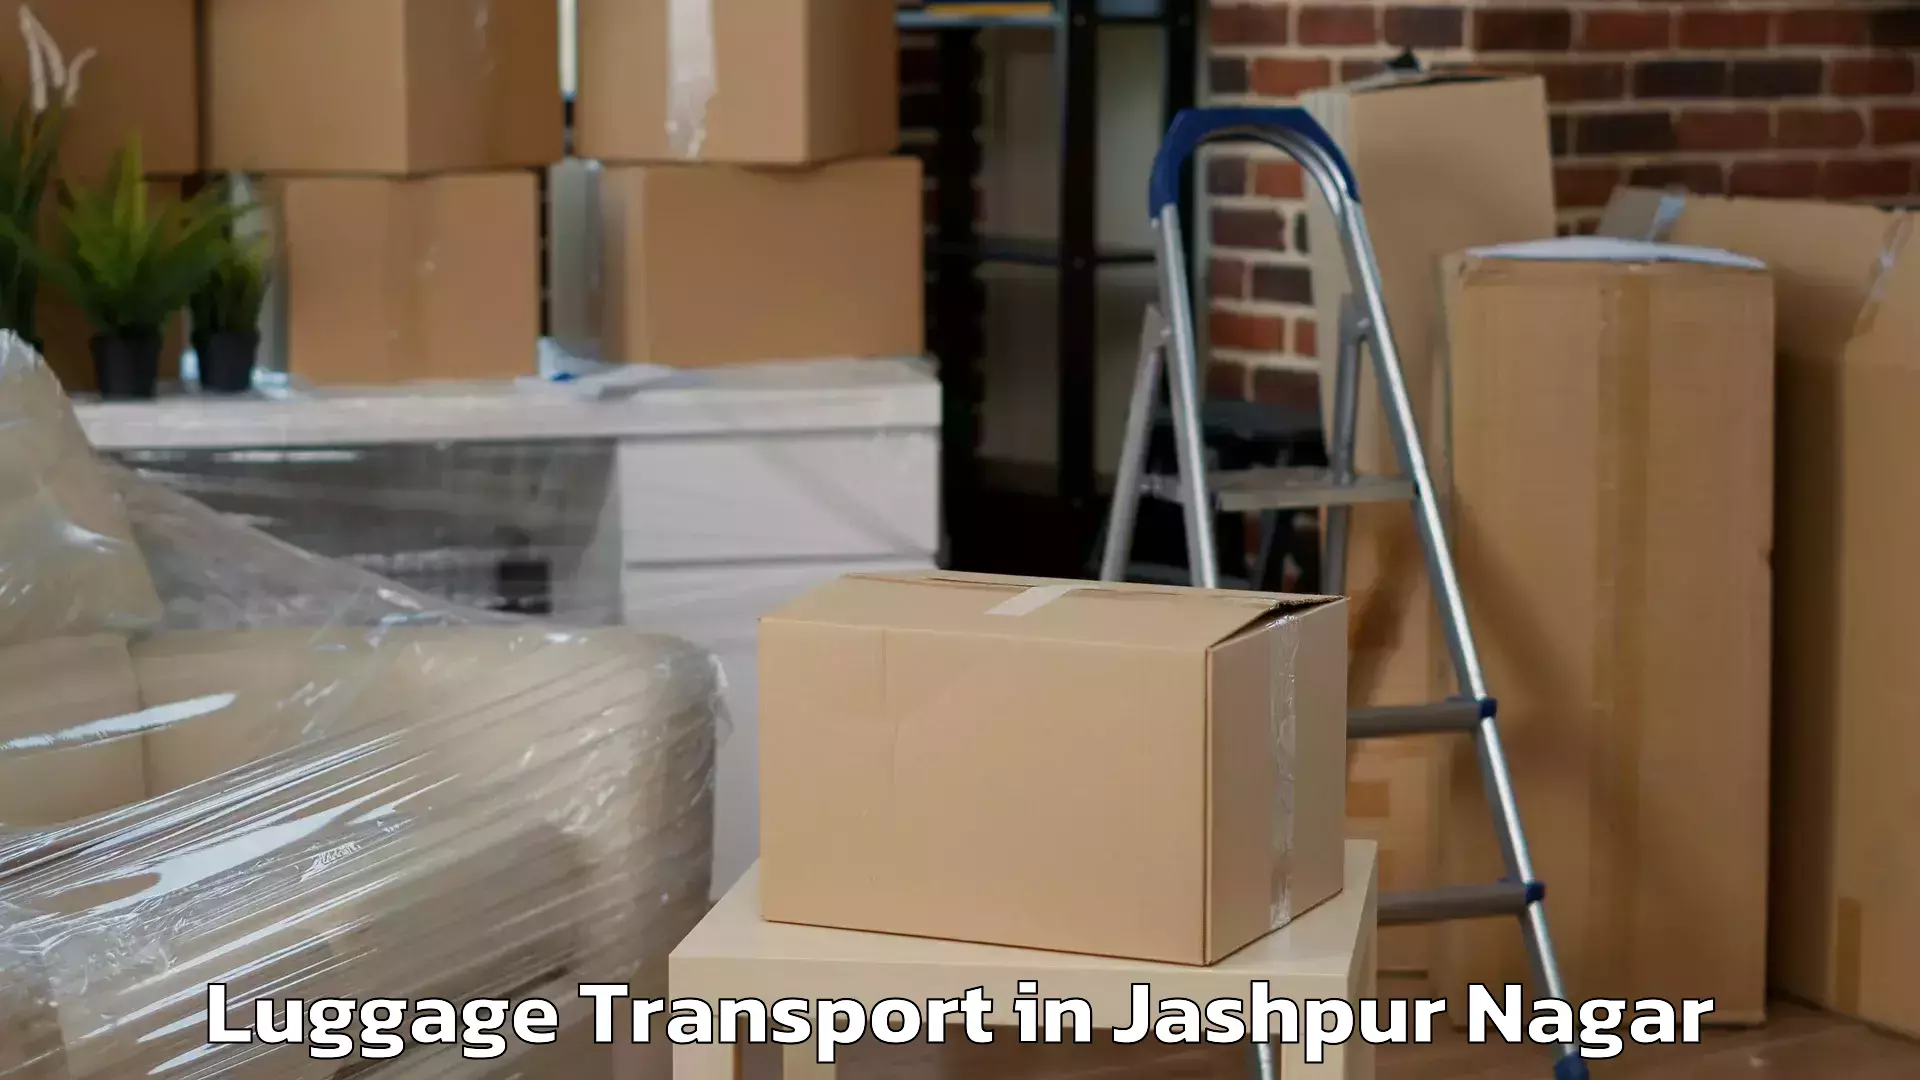 Luggage delivery logistics in Jashpur Nagar